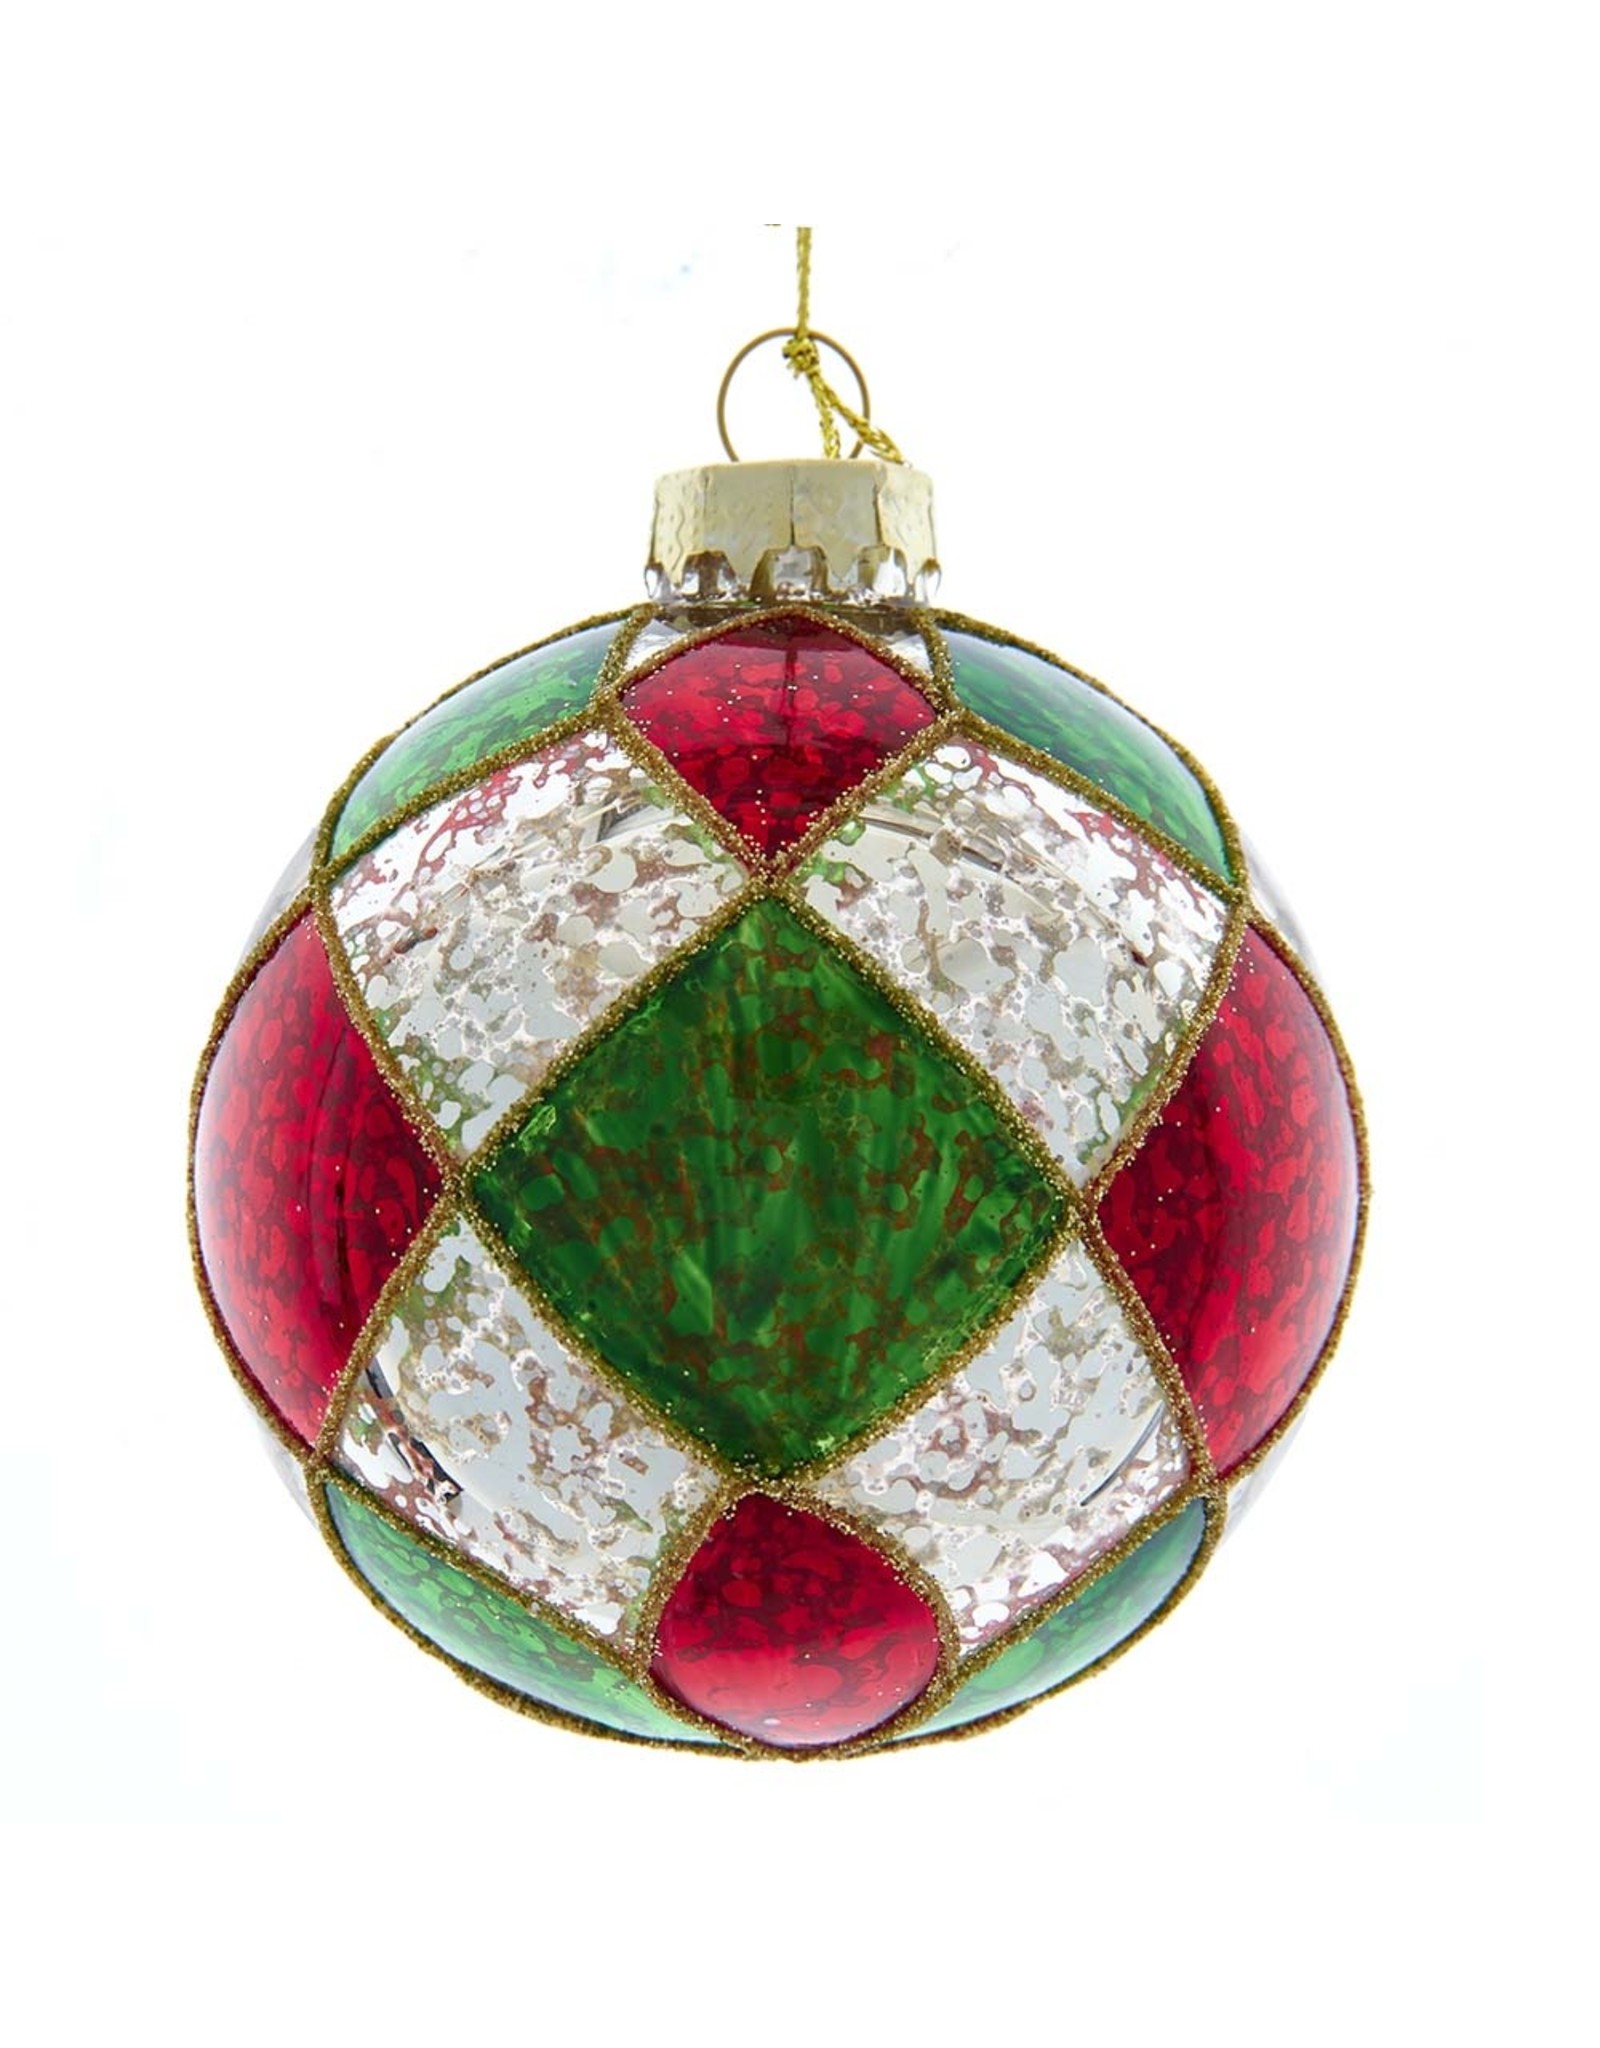 Kurt Adler Red Green Silver Checker Glass Ball Ornaments Set 6